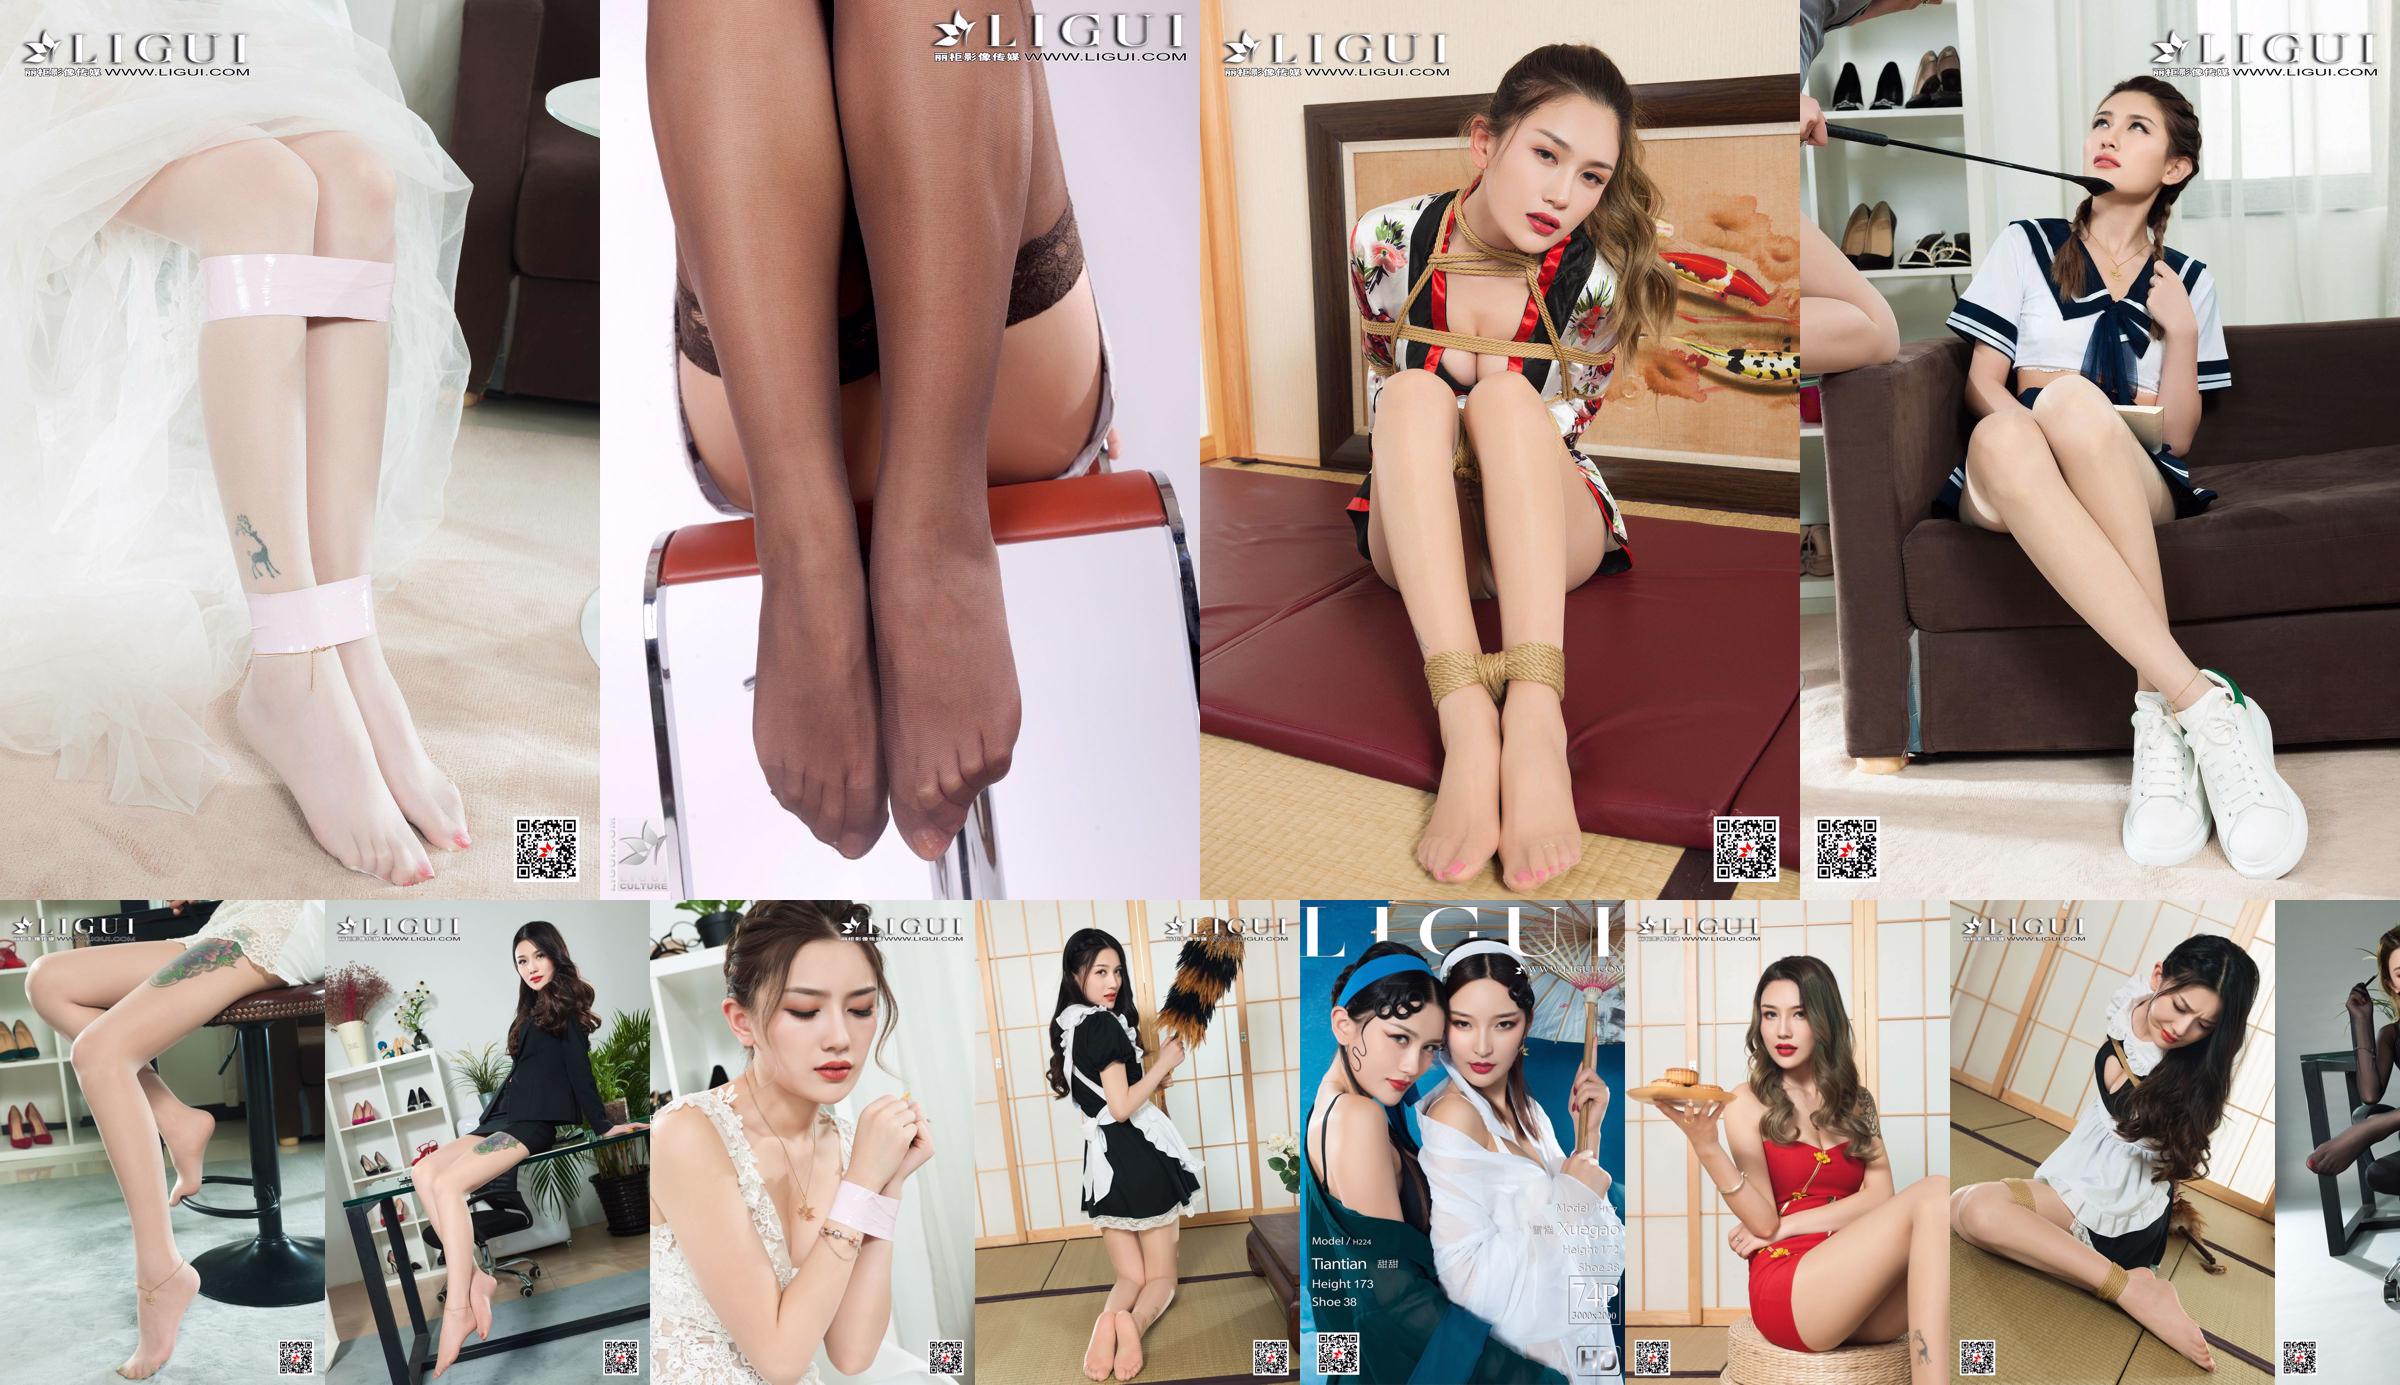 [丽柜Ligui] Network Beauty Model Sweet No.84bc93 Page 2